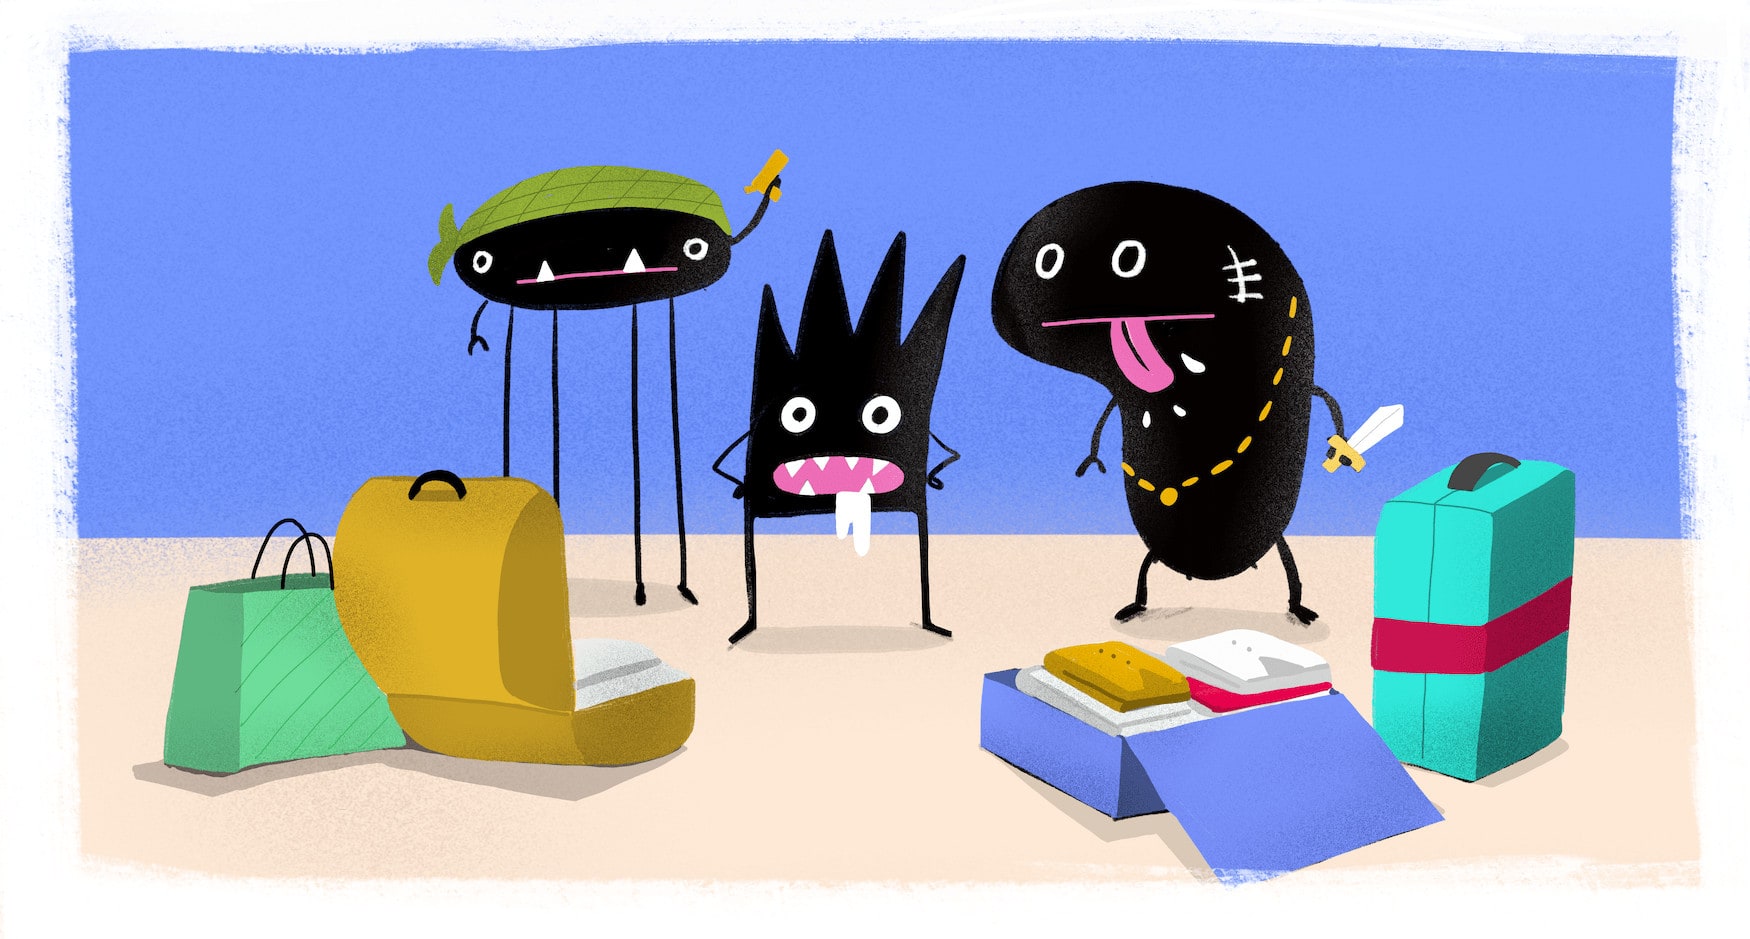 Drei illustrierte Bakterien die sich in Koffer befinden